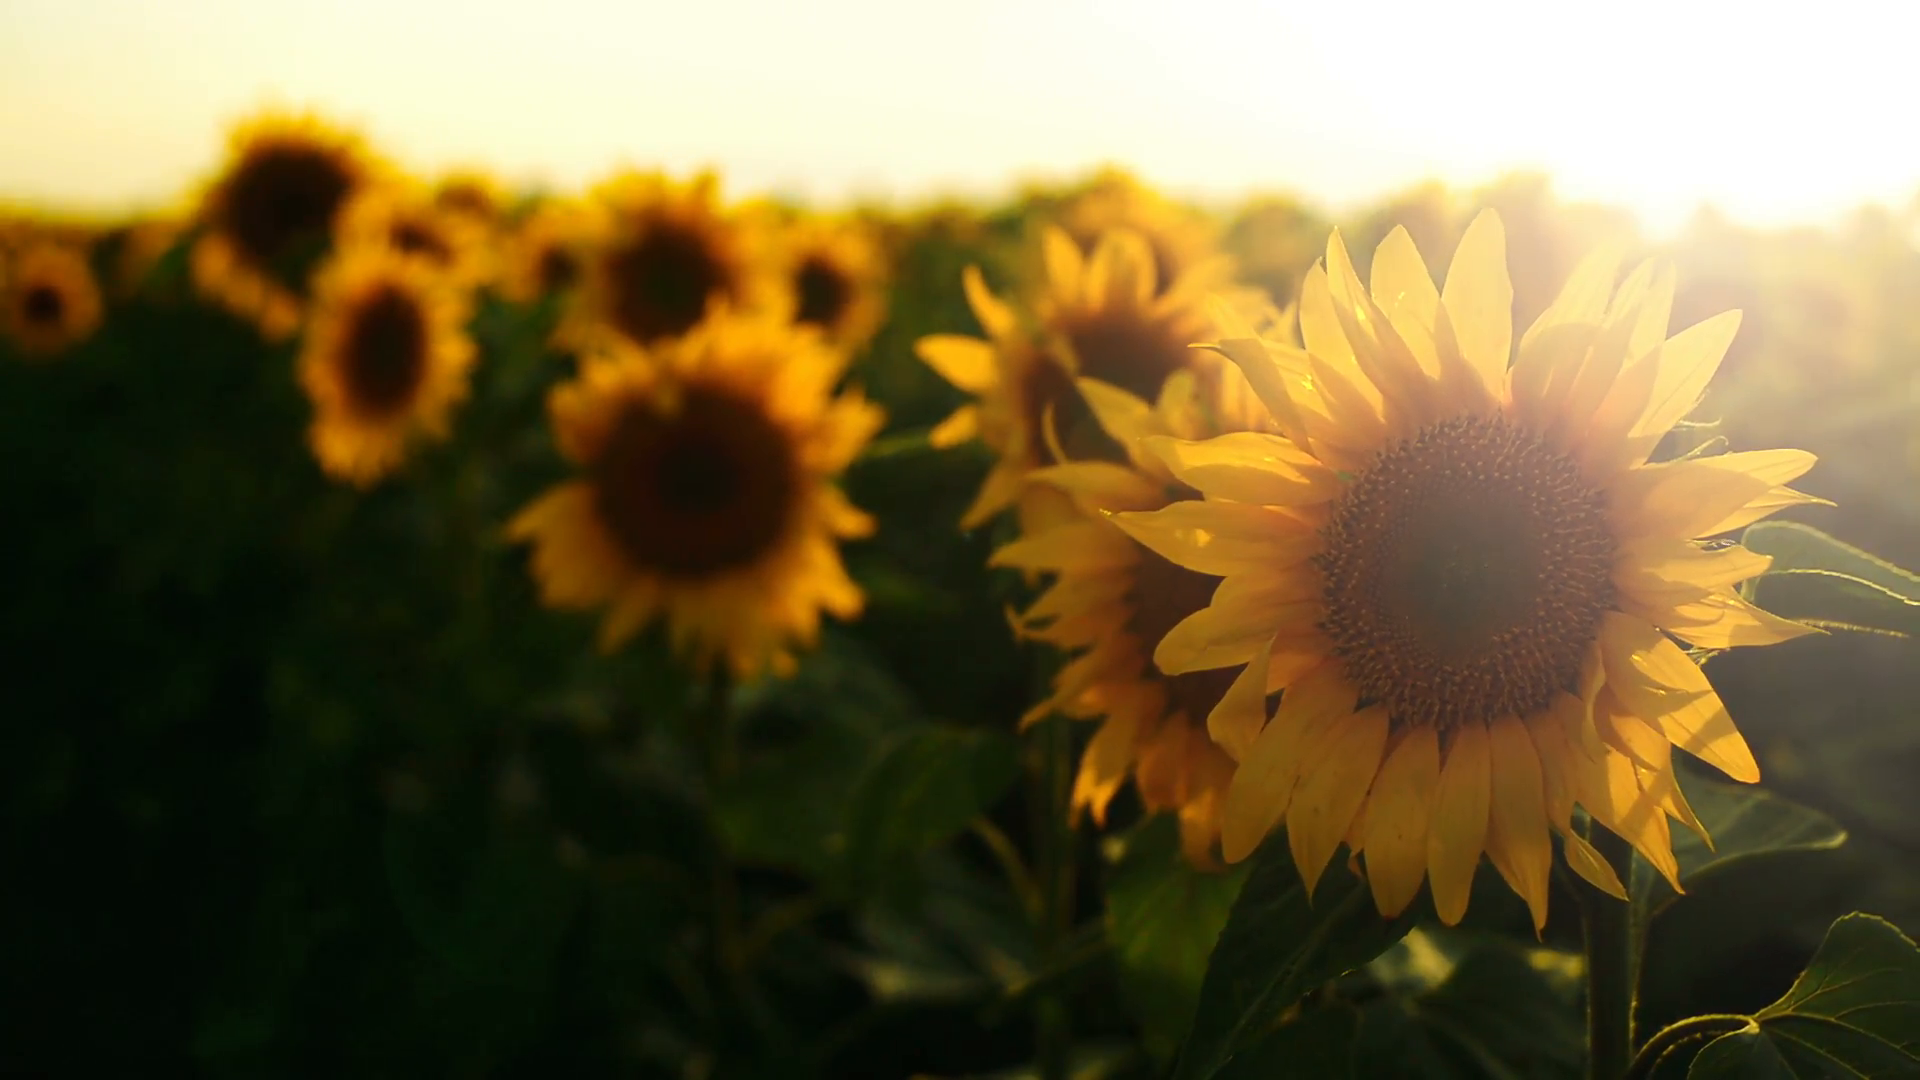 Sunflower Hd Wallpaper 1080p - Sunflower Field Hd , HD Wallpaper & Backgrounds